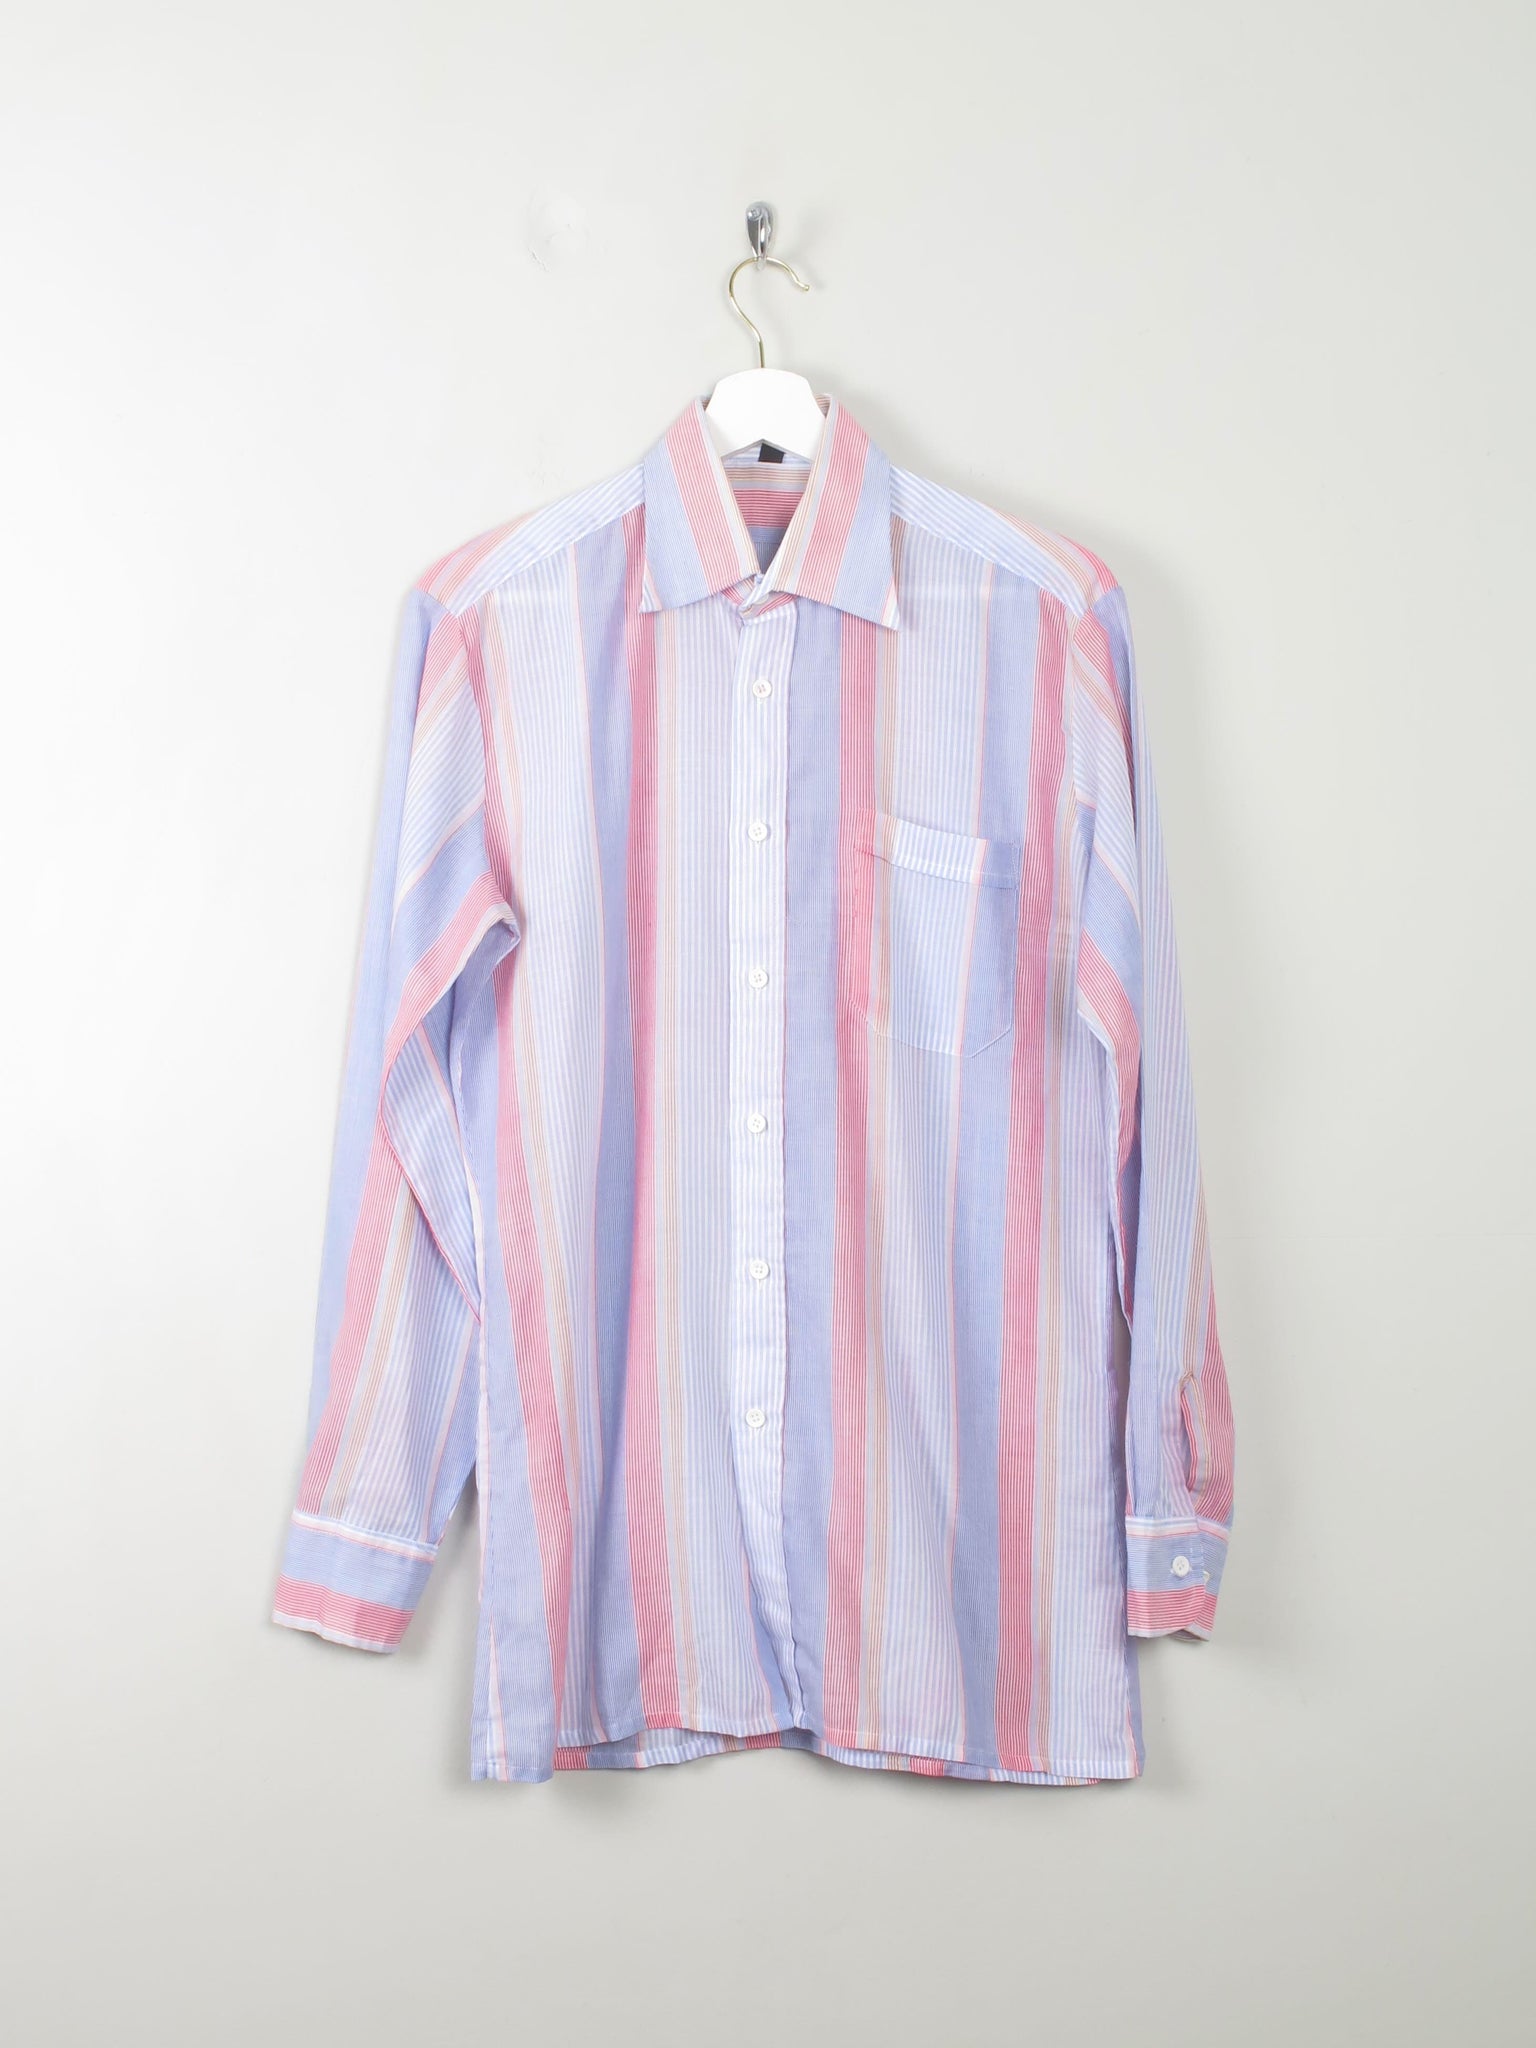 Men's Vintage Striped Shirt S - The Harlequin